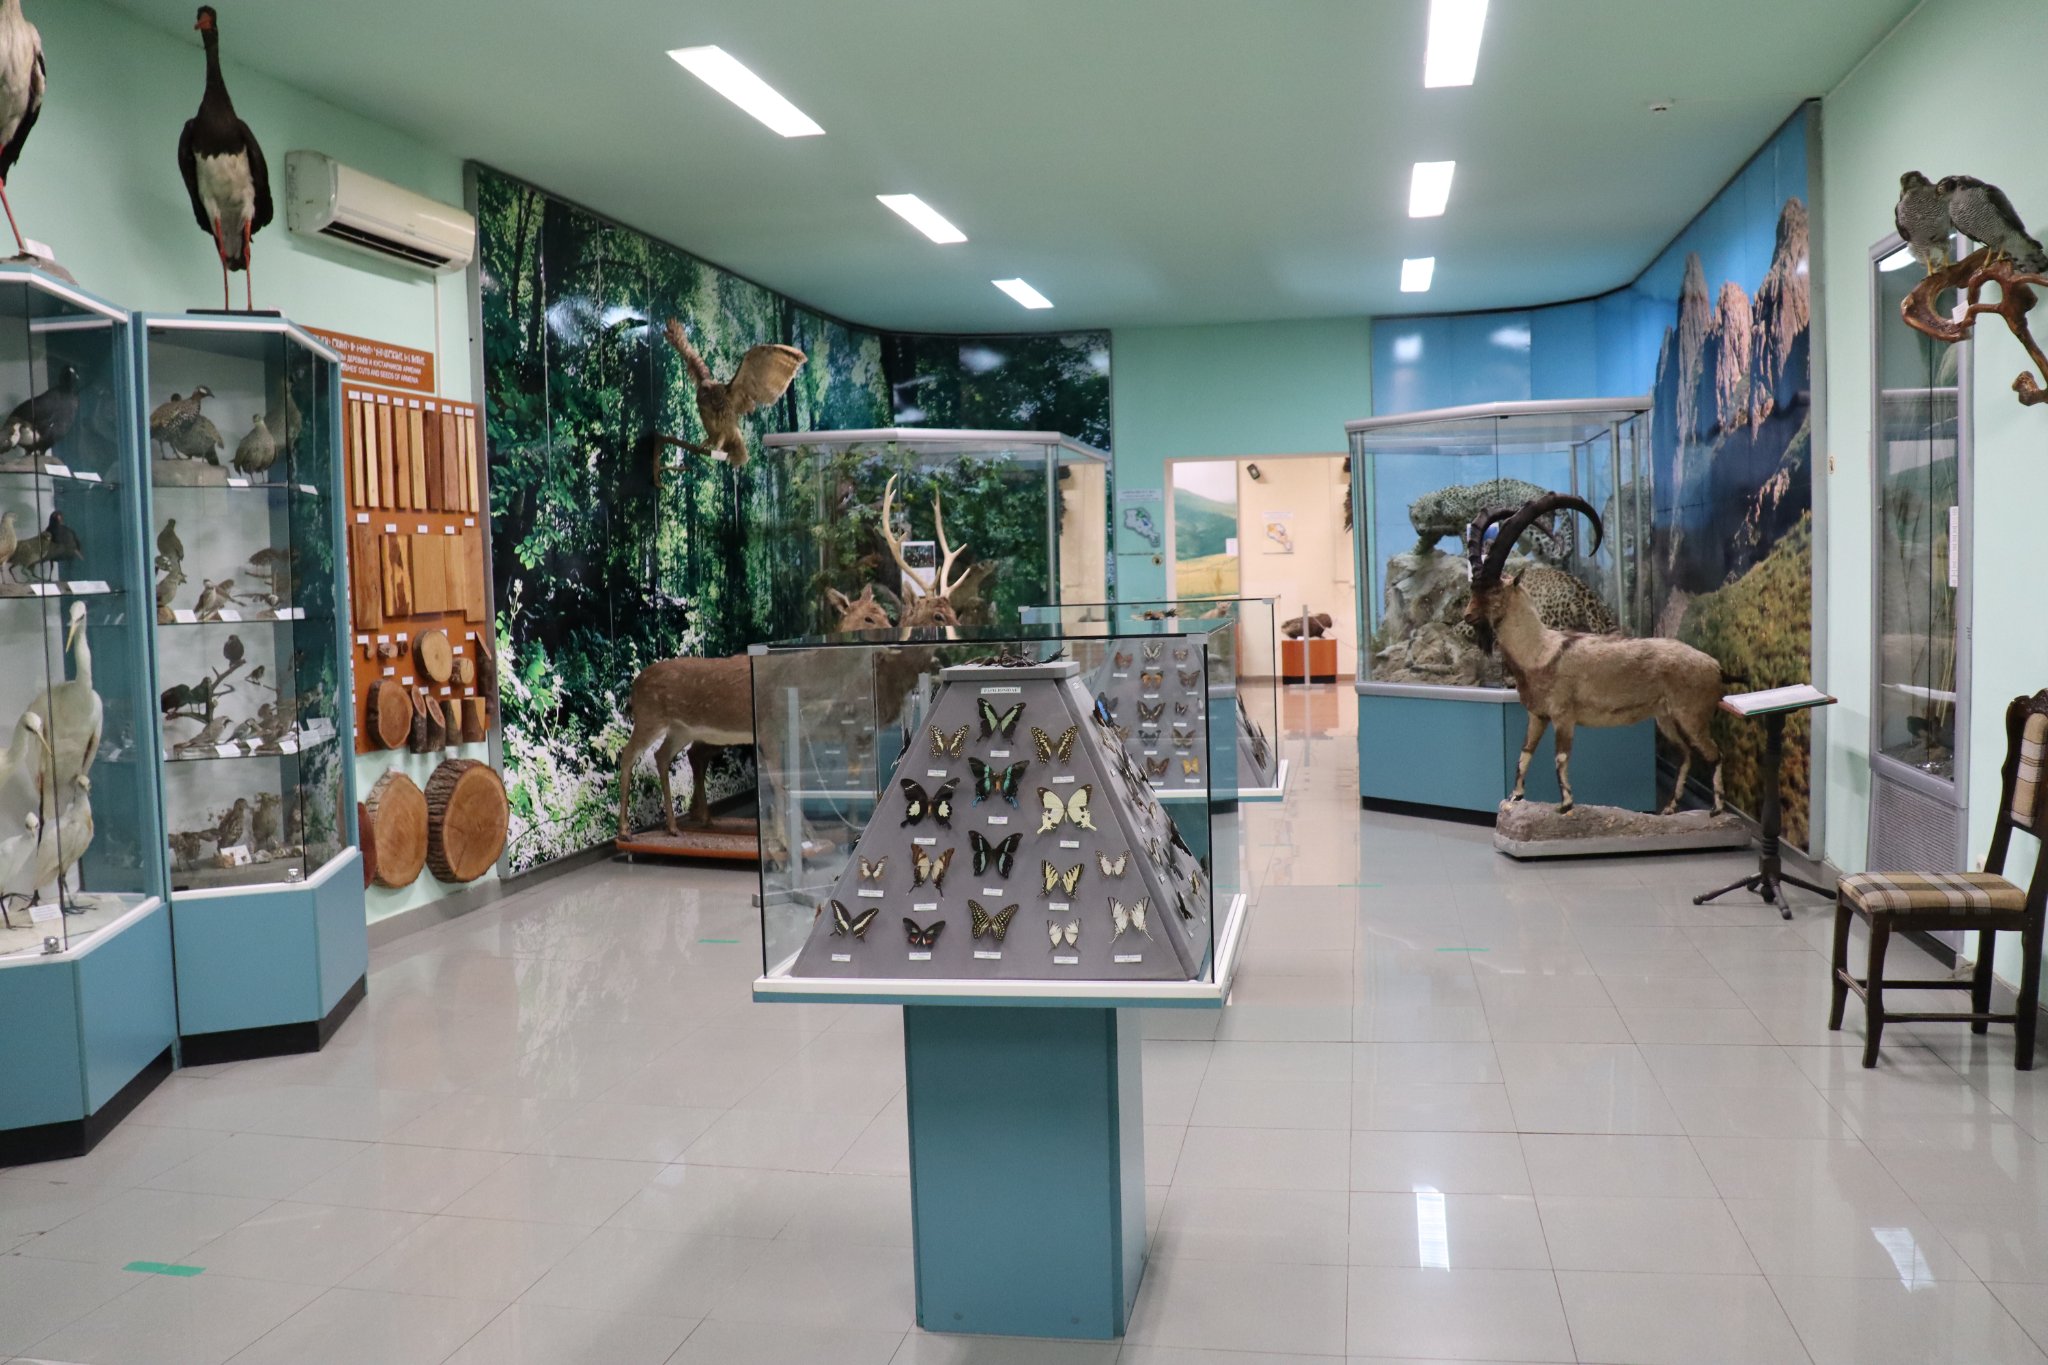 Բնության թանգարանը հրավիրում է միասին տոնելու Թանգարանների միջազգային օրը